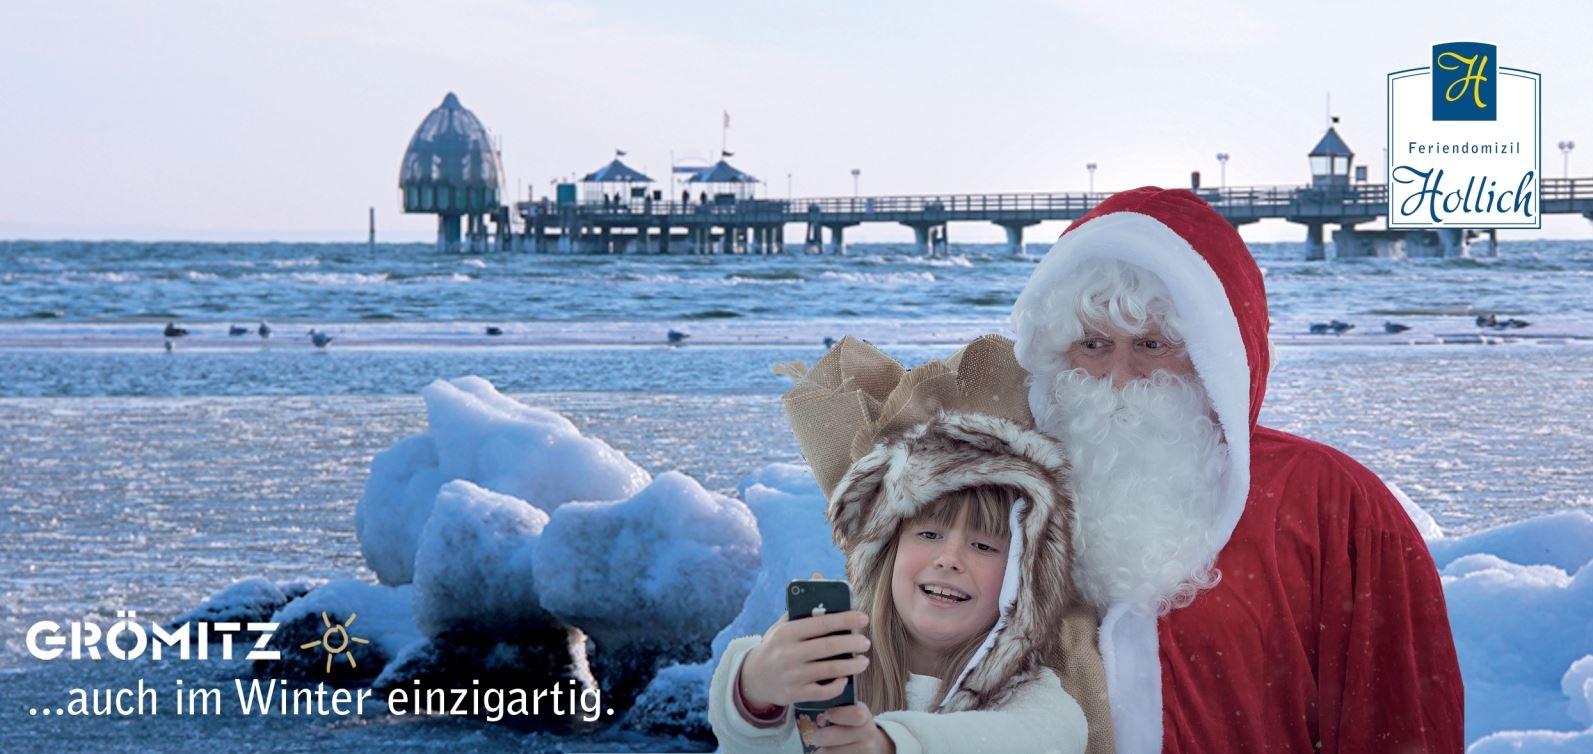 Weihnachtsmann und Mädchen schießen ein Selfie vor der Grömitzer Seebrücke